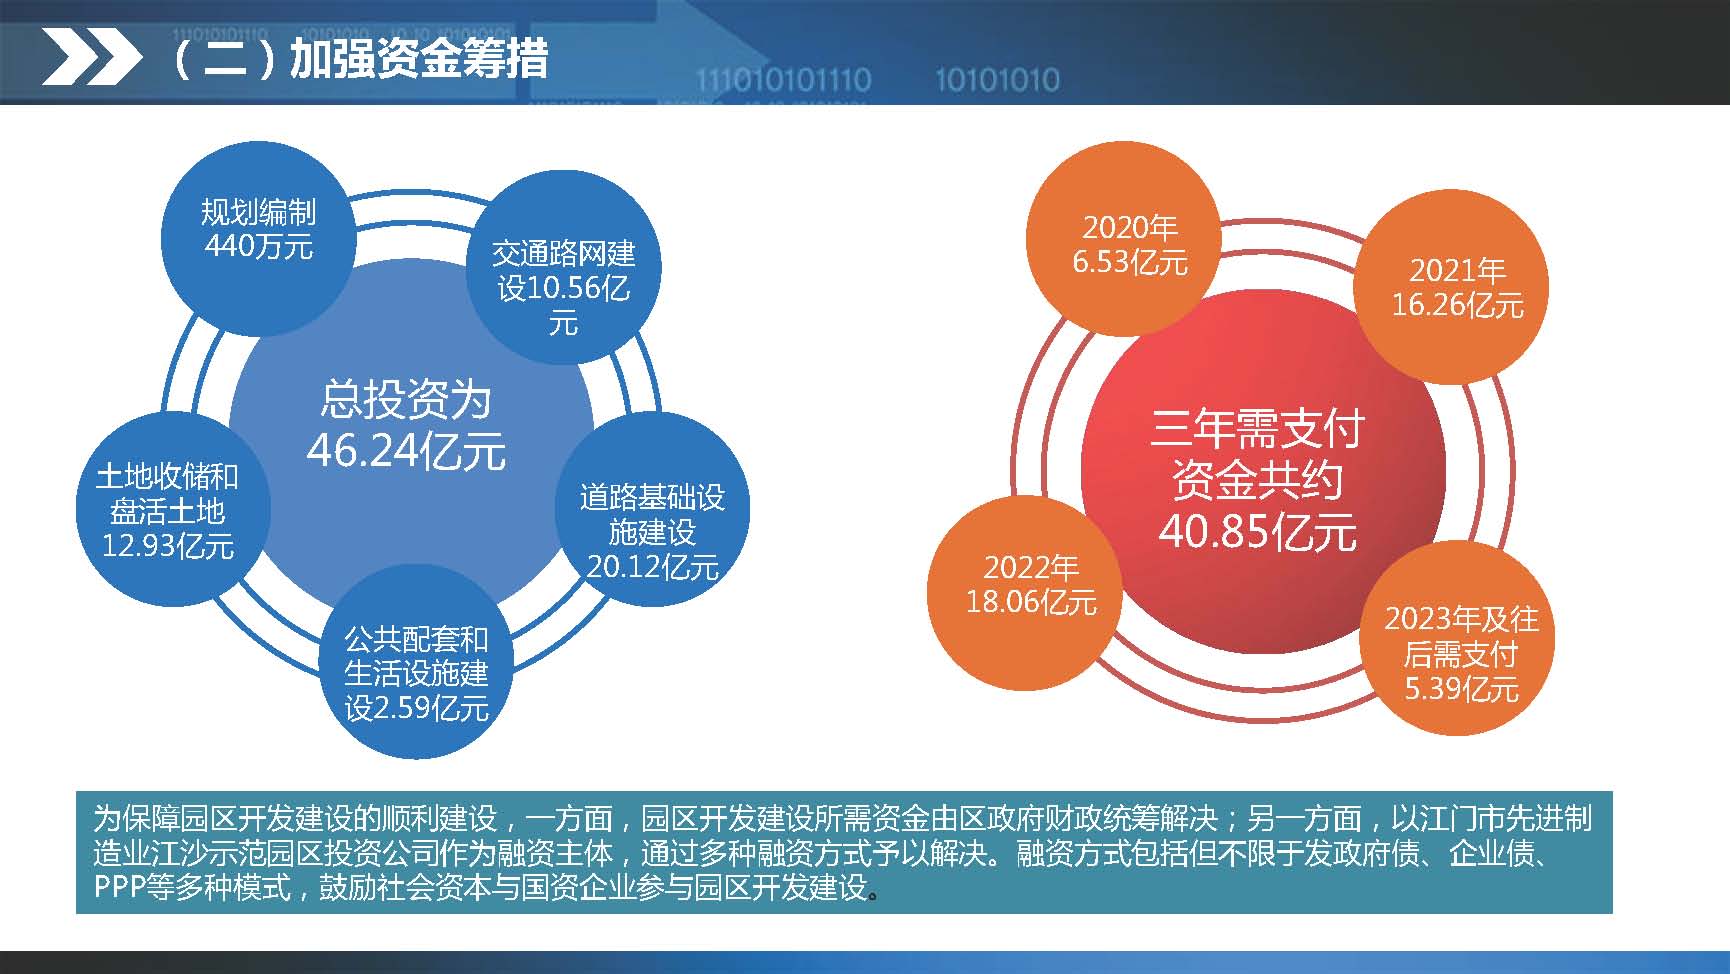 《江门蓬江产业转移工业园建设三年行动计划（2020-2022年）》图文解读_页面_18.jpg